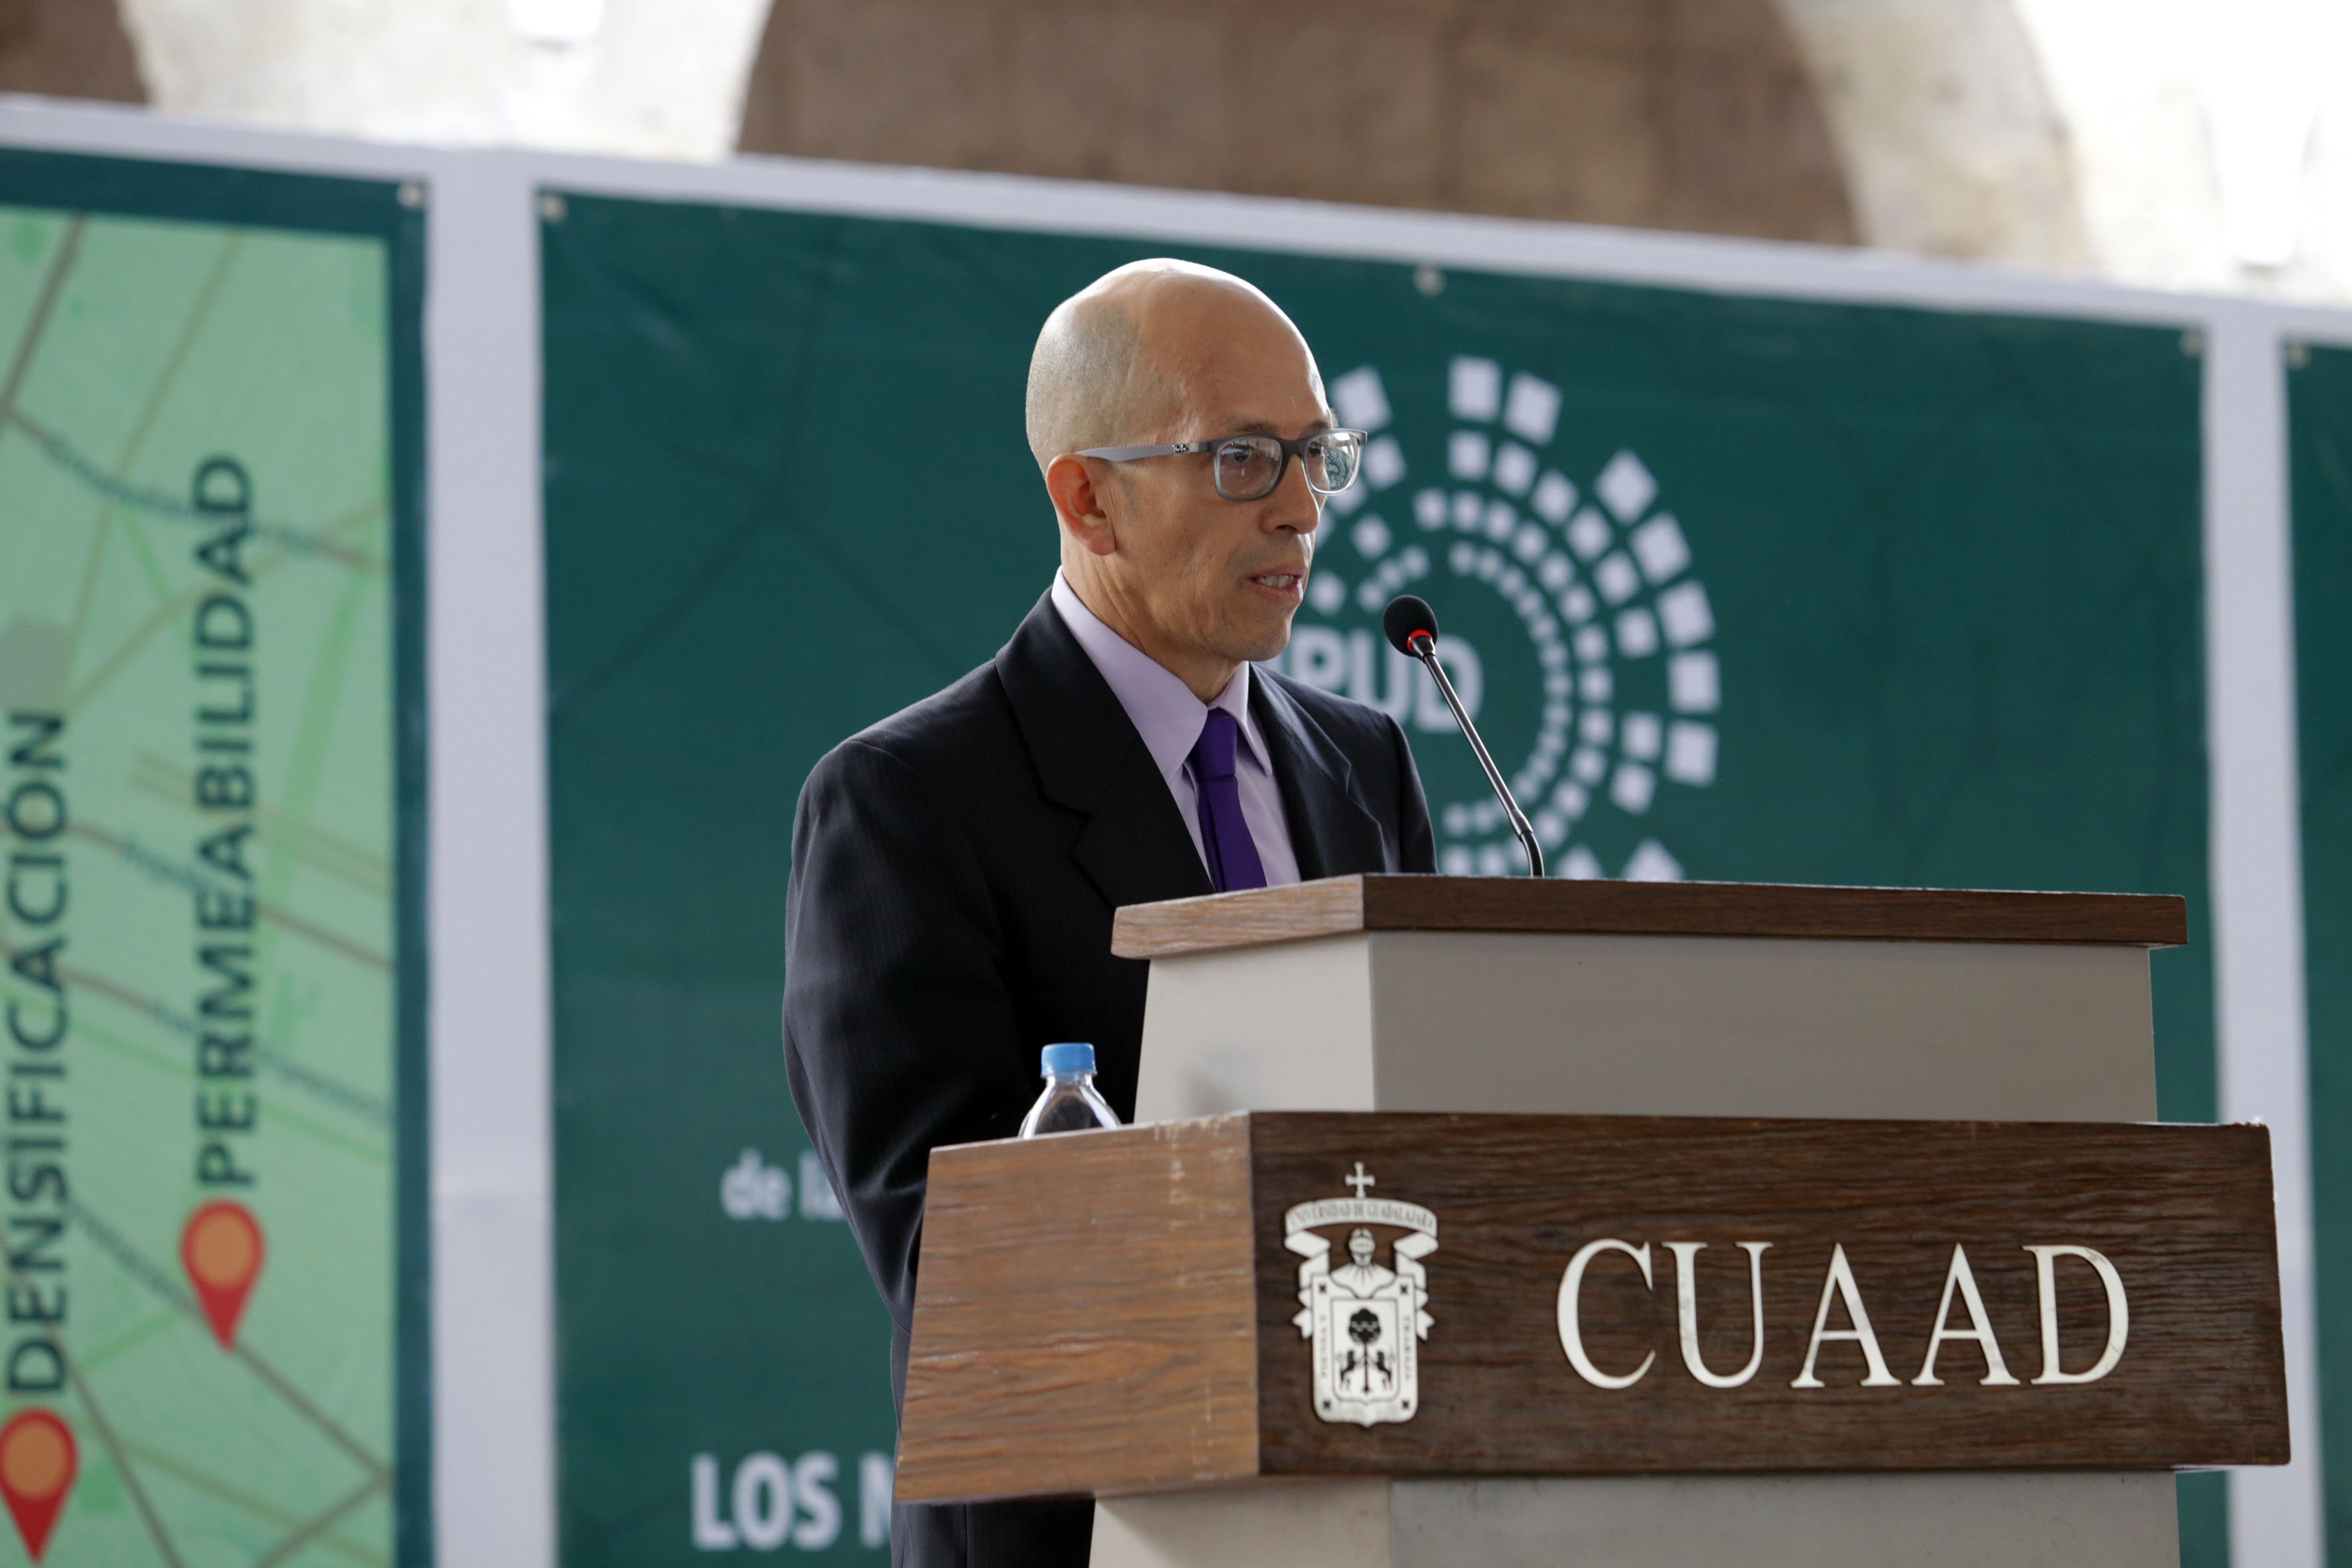 Jefe del Departamento de Proyectos Urbanísticos del CUAAD, doctor Ramón Reyes Rodríguez, en podium del evento haciendo uso de la palabra.